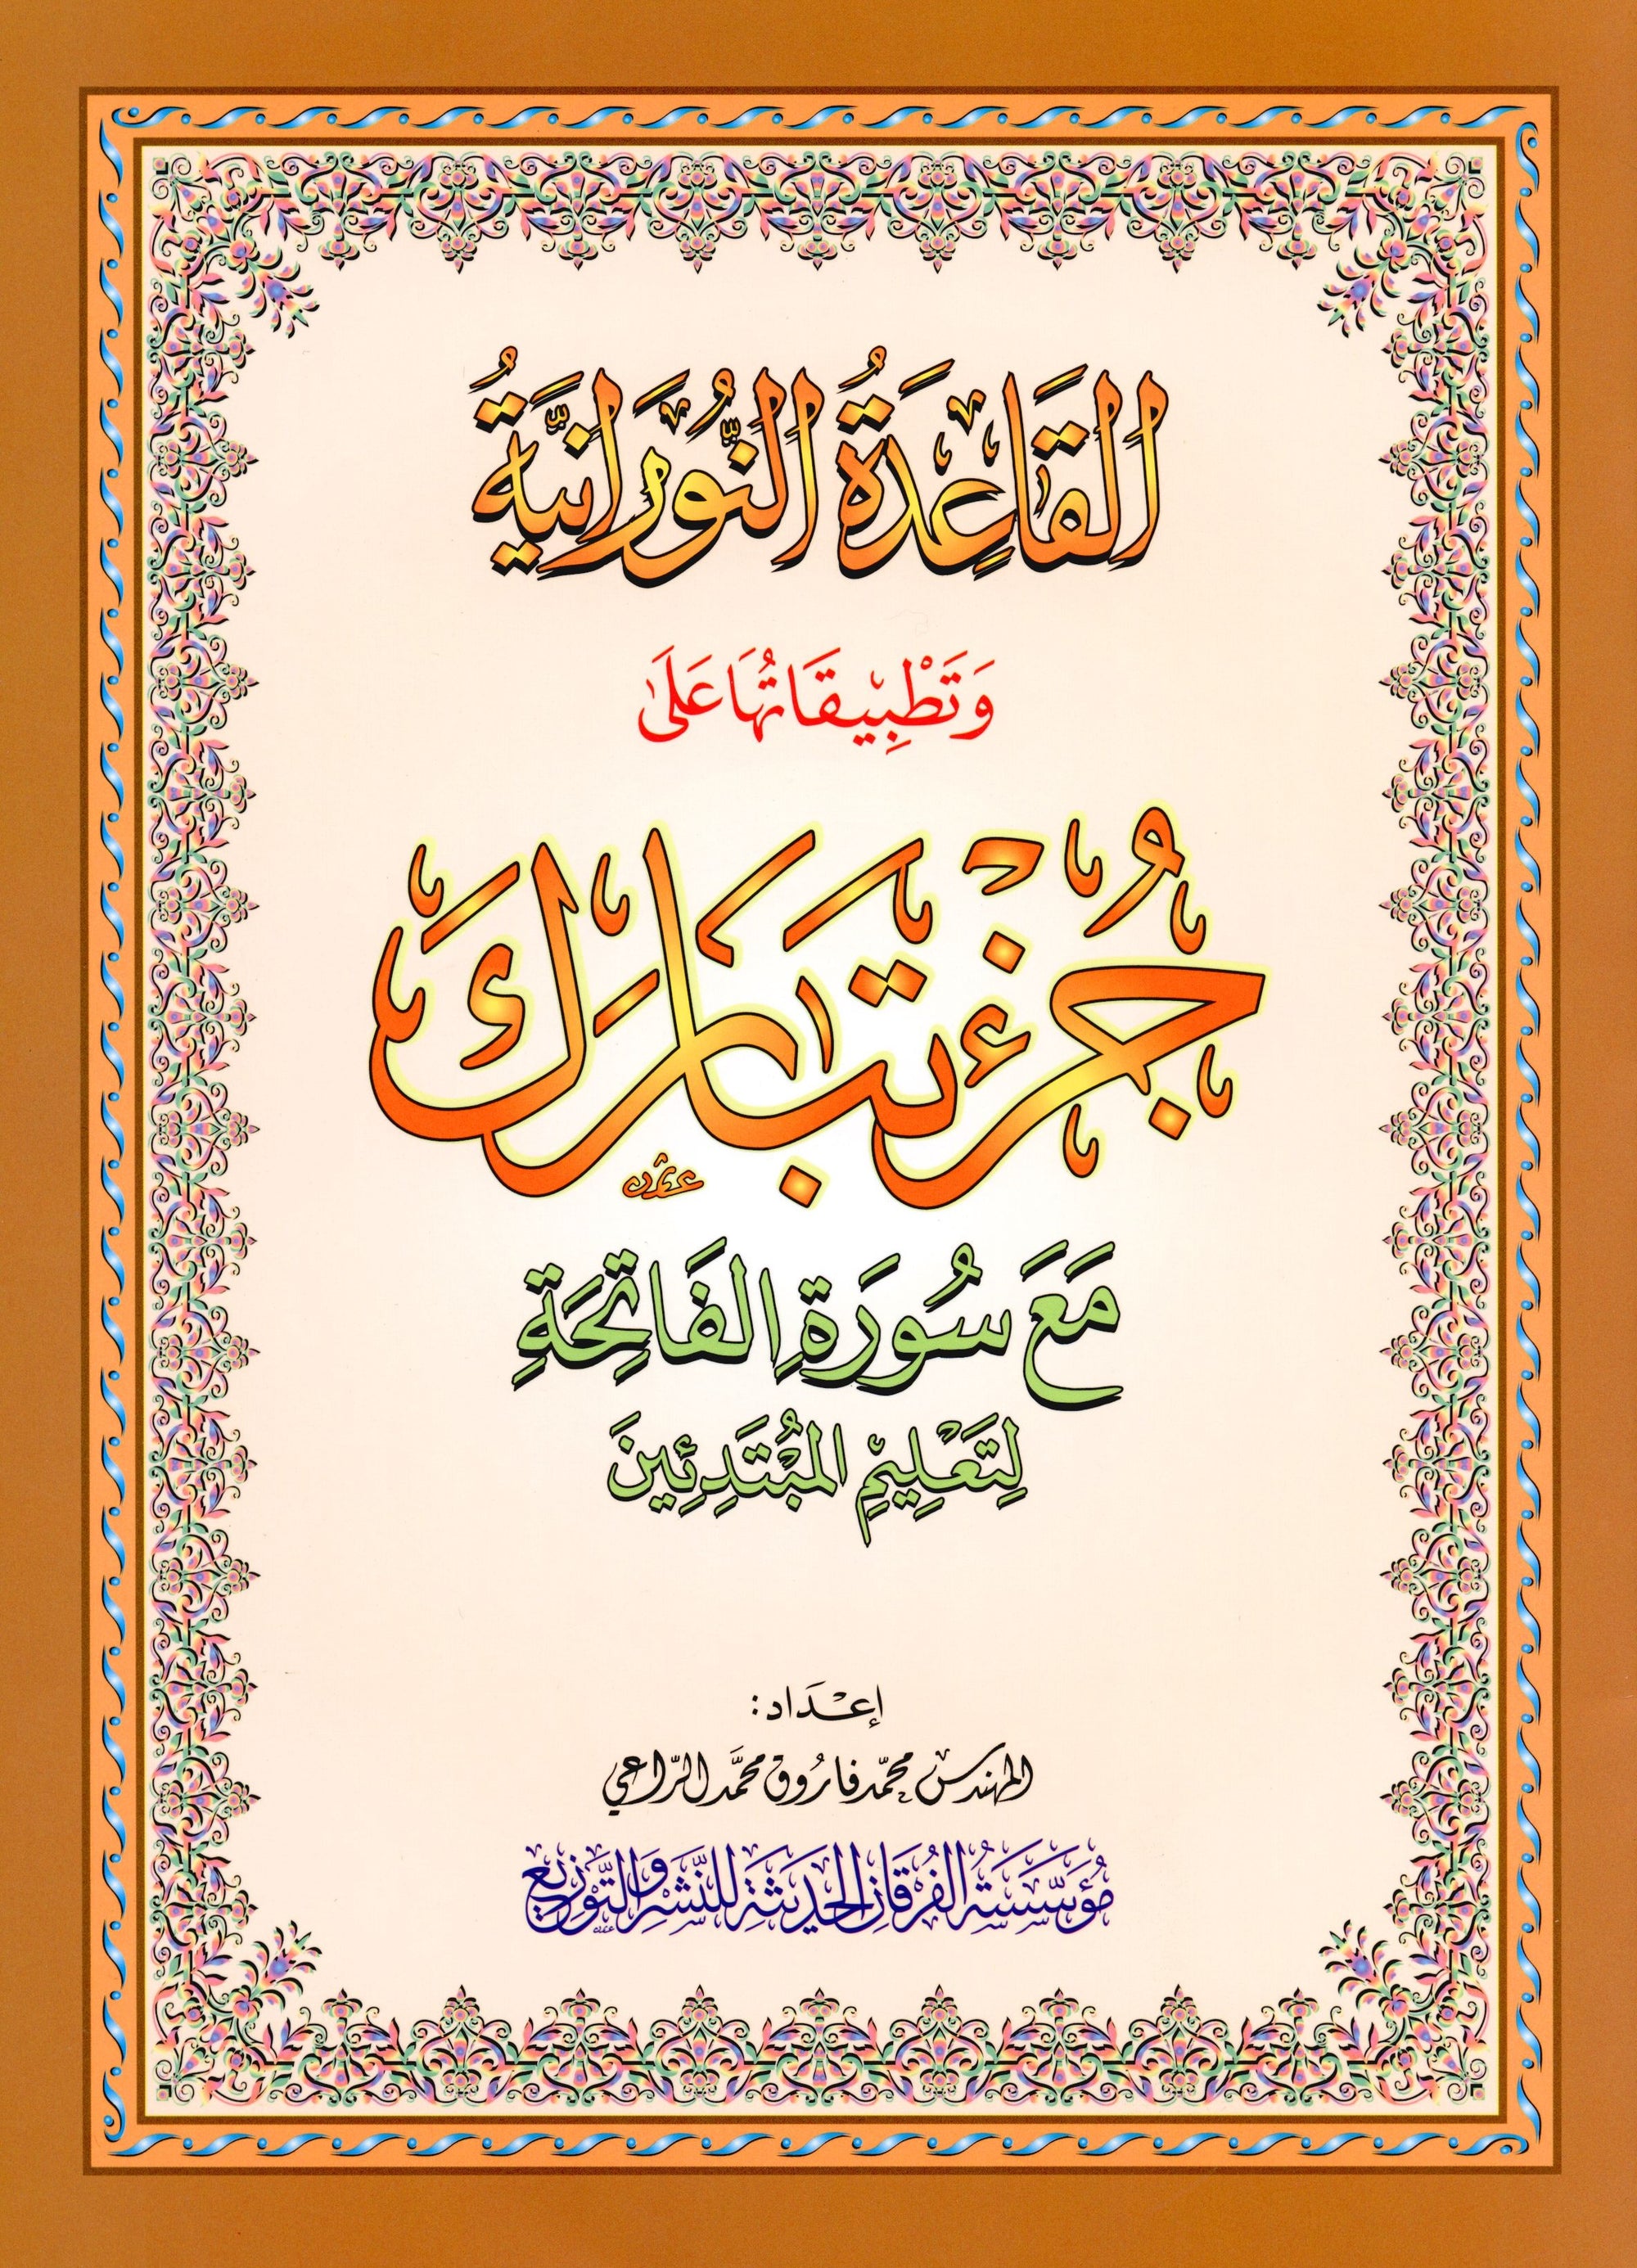 Al-Qaidah An-Noraniah - Juz’ Tabarak & Suratul-Fatihah for Beginners Large 7 x 9 القاعدة النورانية وتطبيقاتها على جزء تبارك مع سورة الفاتحة للمبتدئين